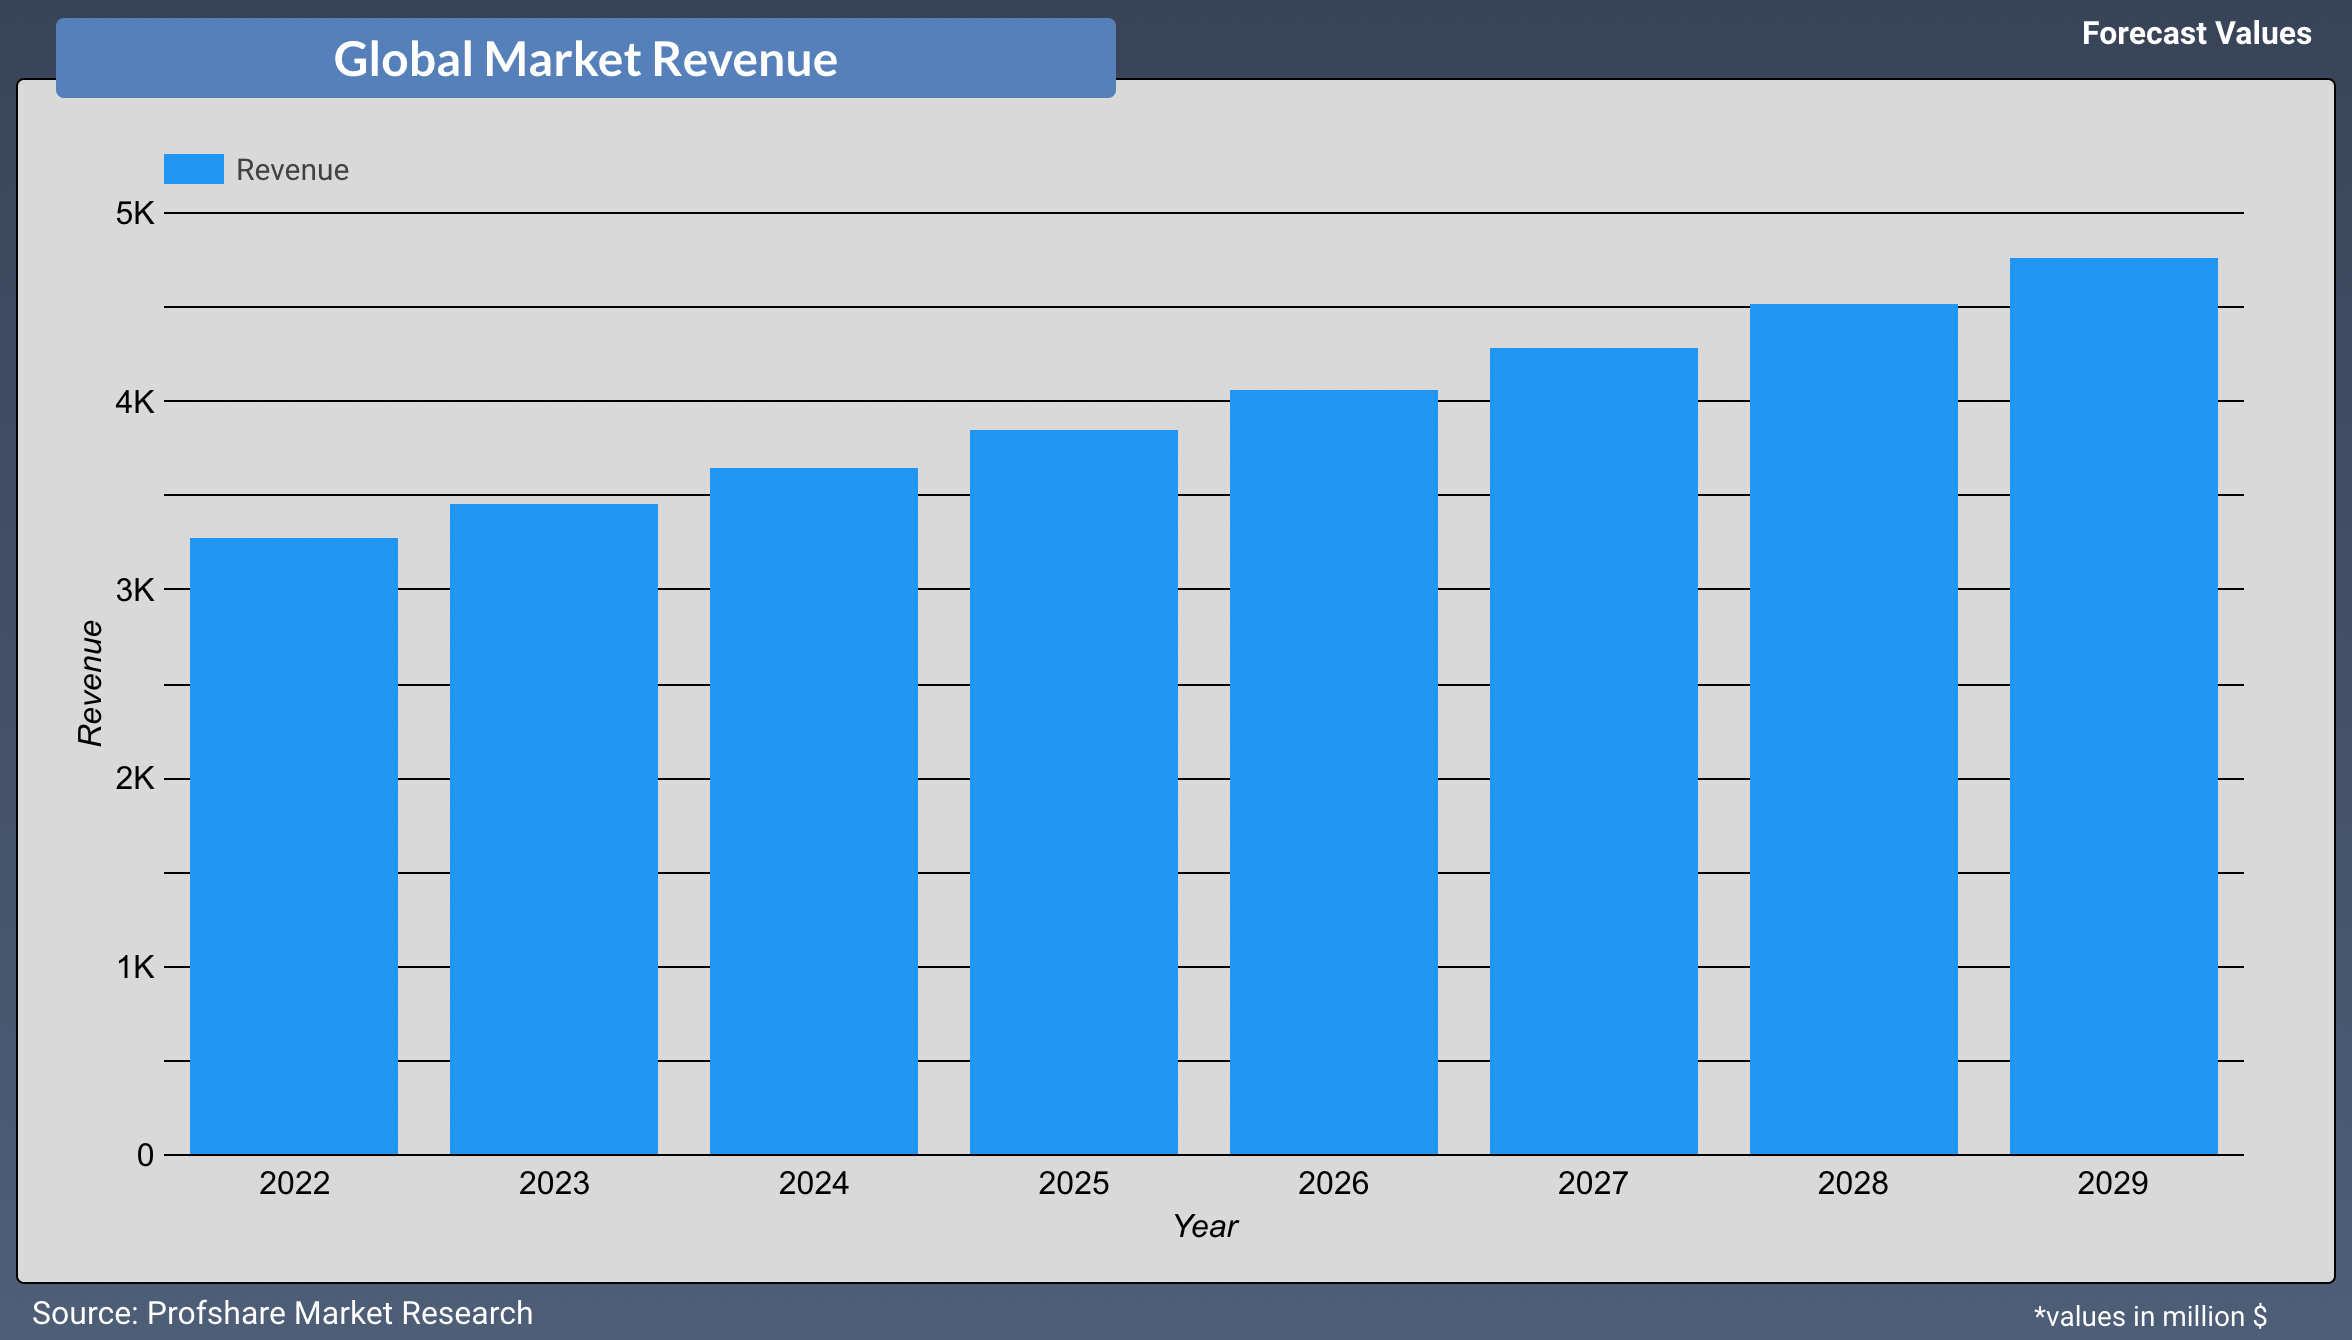 Se espera que el valor de mercado de las carretillas de mano aumente en más de 45,000 millones de dólares estadounidenses después de covid-19